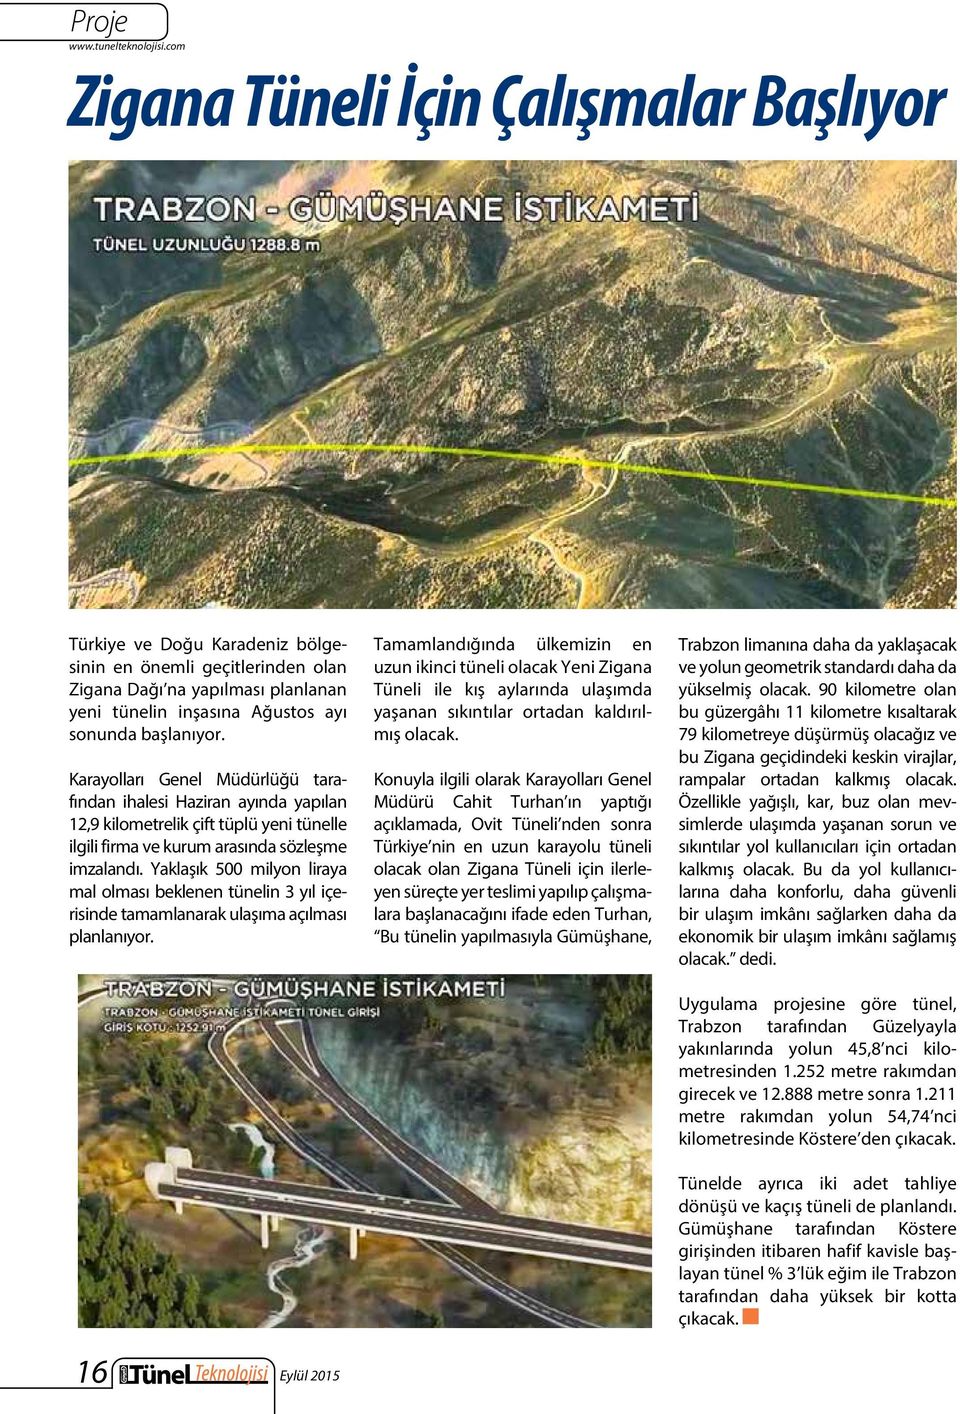 Karayolları Genel Müdürlüğü tarafından ihalesi Haziran ayında yapılan 12,9 kilometrelik çift tüplü yeni tünelle ilgili firma ve kurum arasında sözleşme imzalandı.